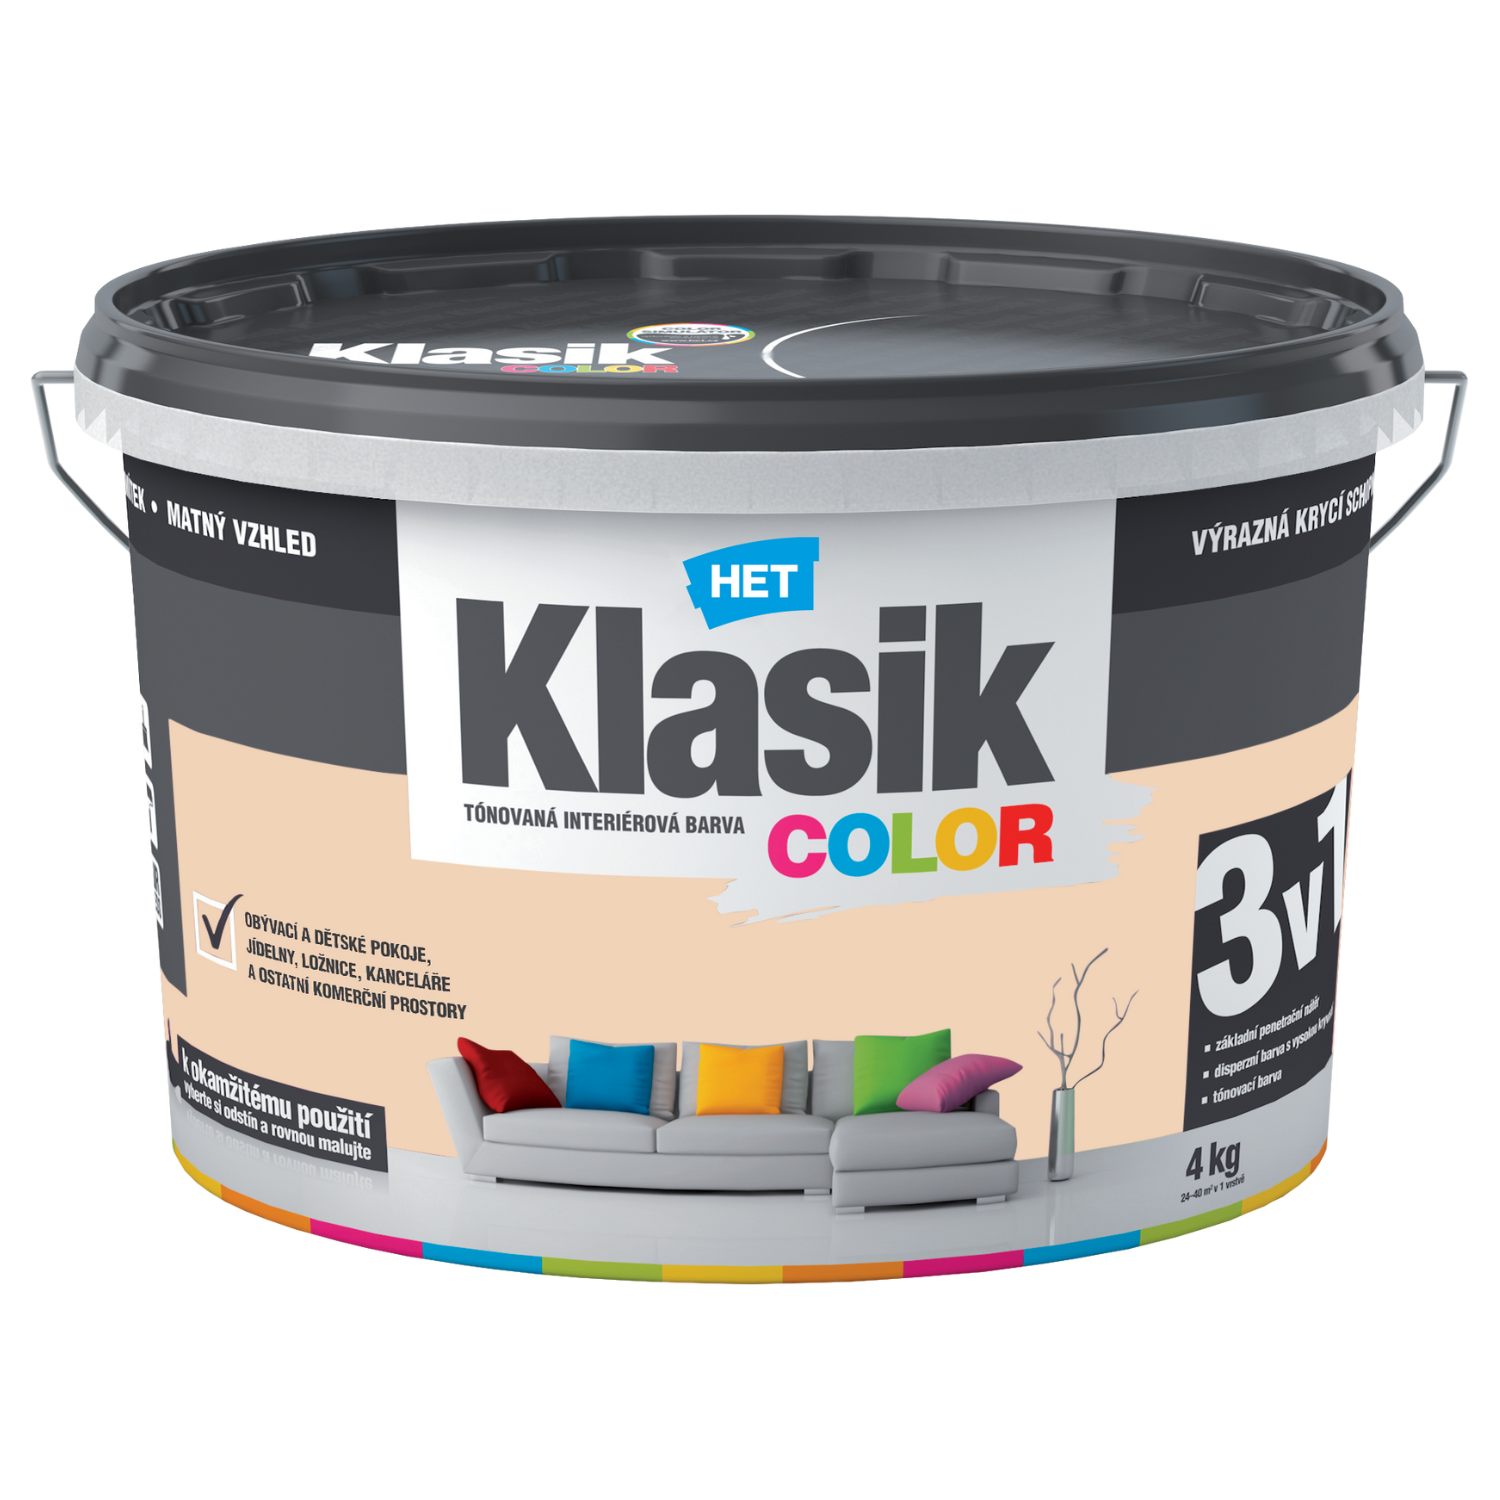 HET Klasik COLOR tónovaná interiérová akrylátová disperzná oteruvzdorná farba 4 kg, KC0728 - oranžový broskyňový